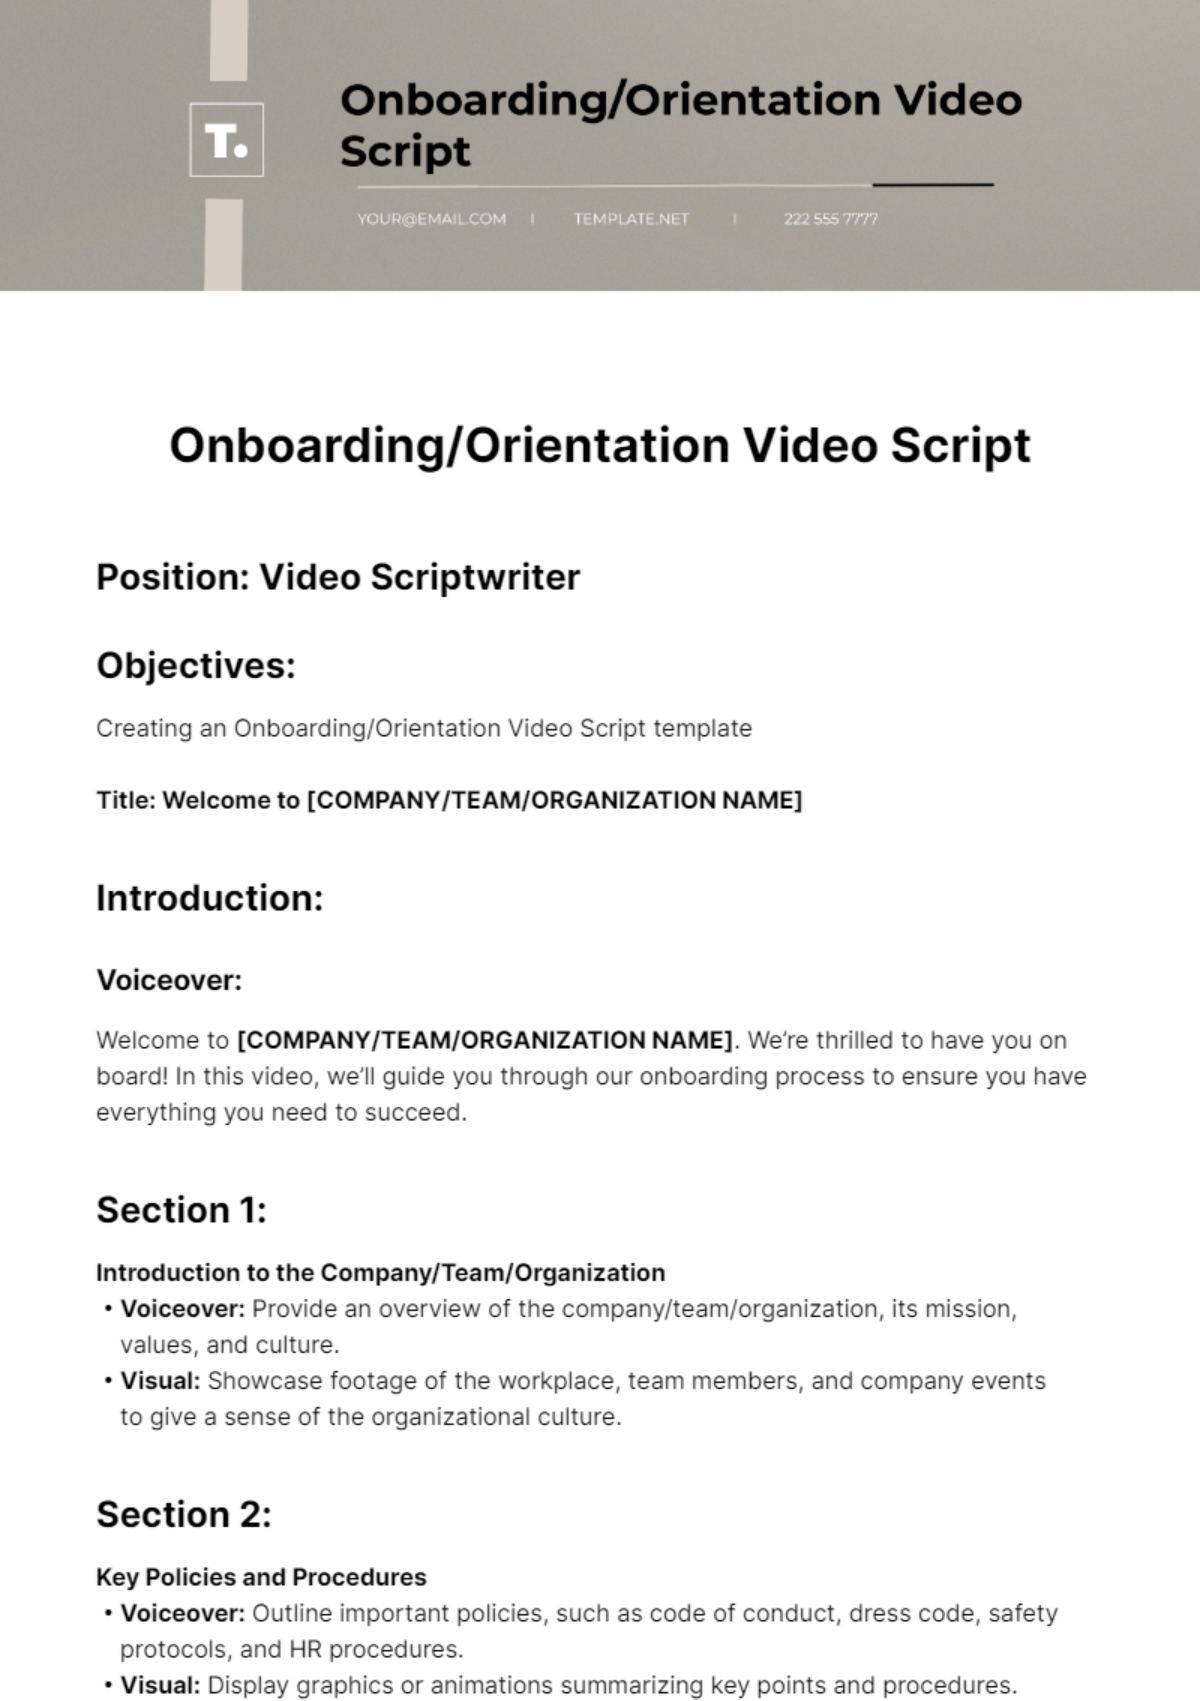 Free Onboarding/Orientation Video Script template